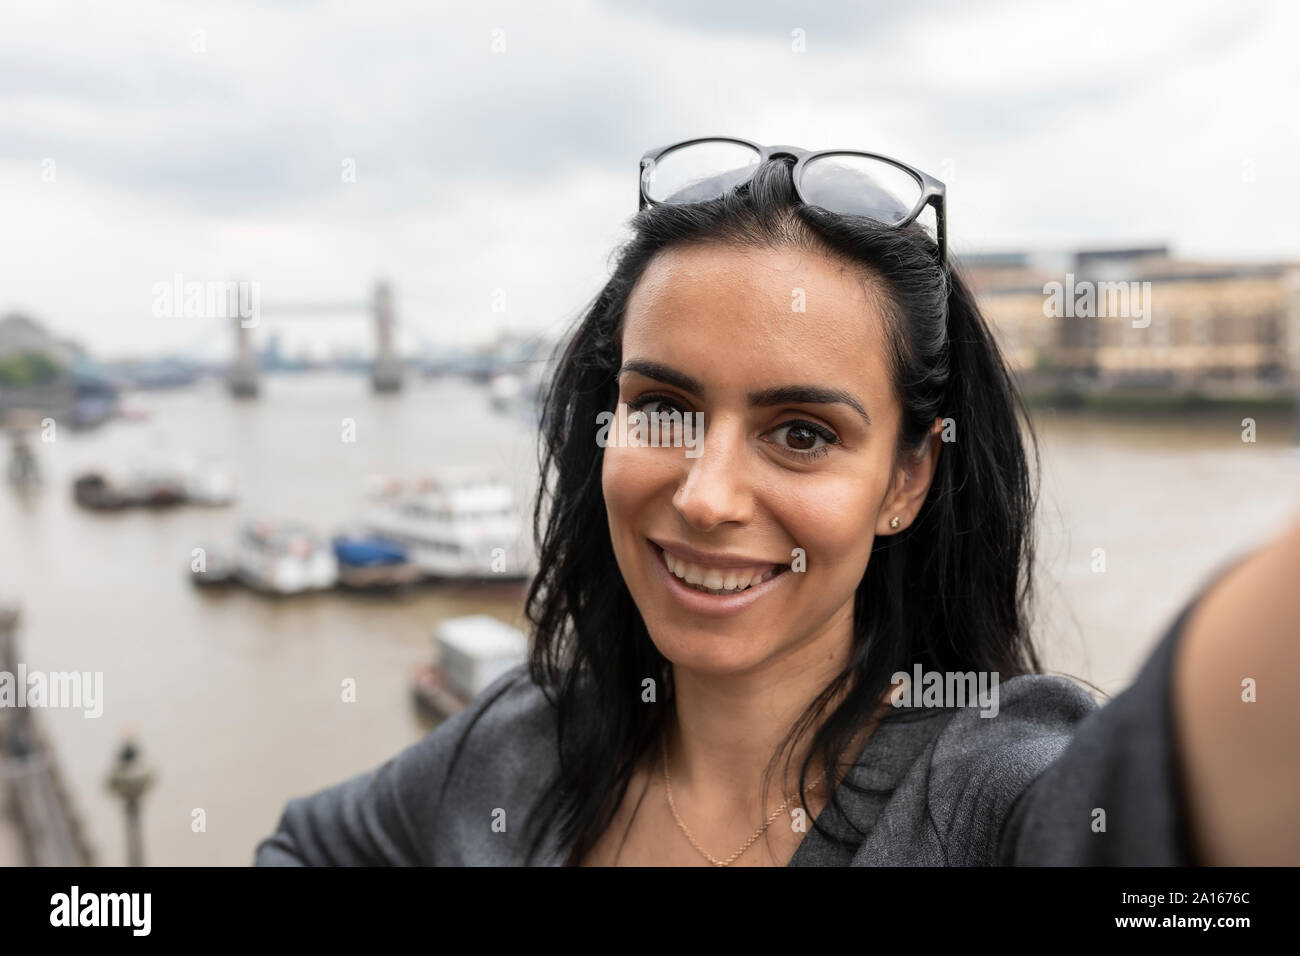 Portrait de awoman prenant une dans la ville avec selfies Tower Bridge sur l'arrière-plan, London, UK Banque D'Images